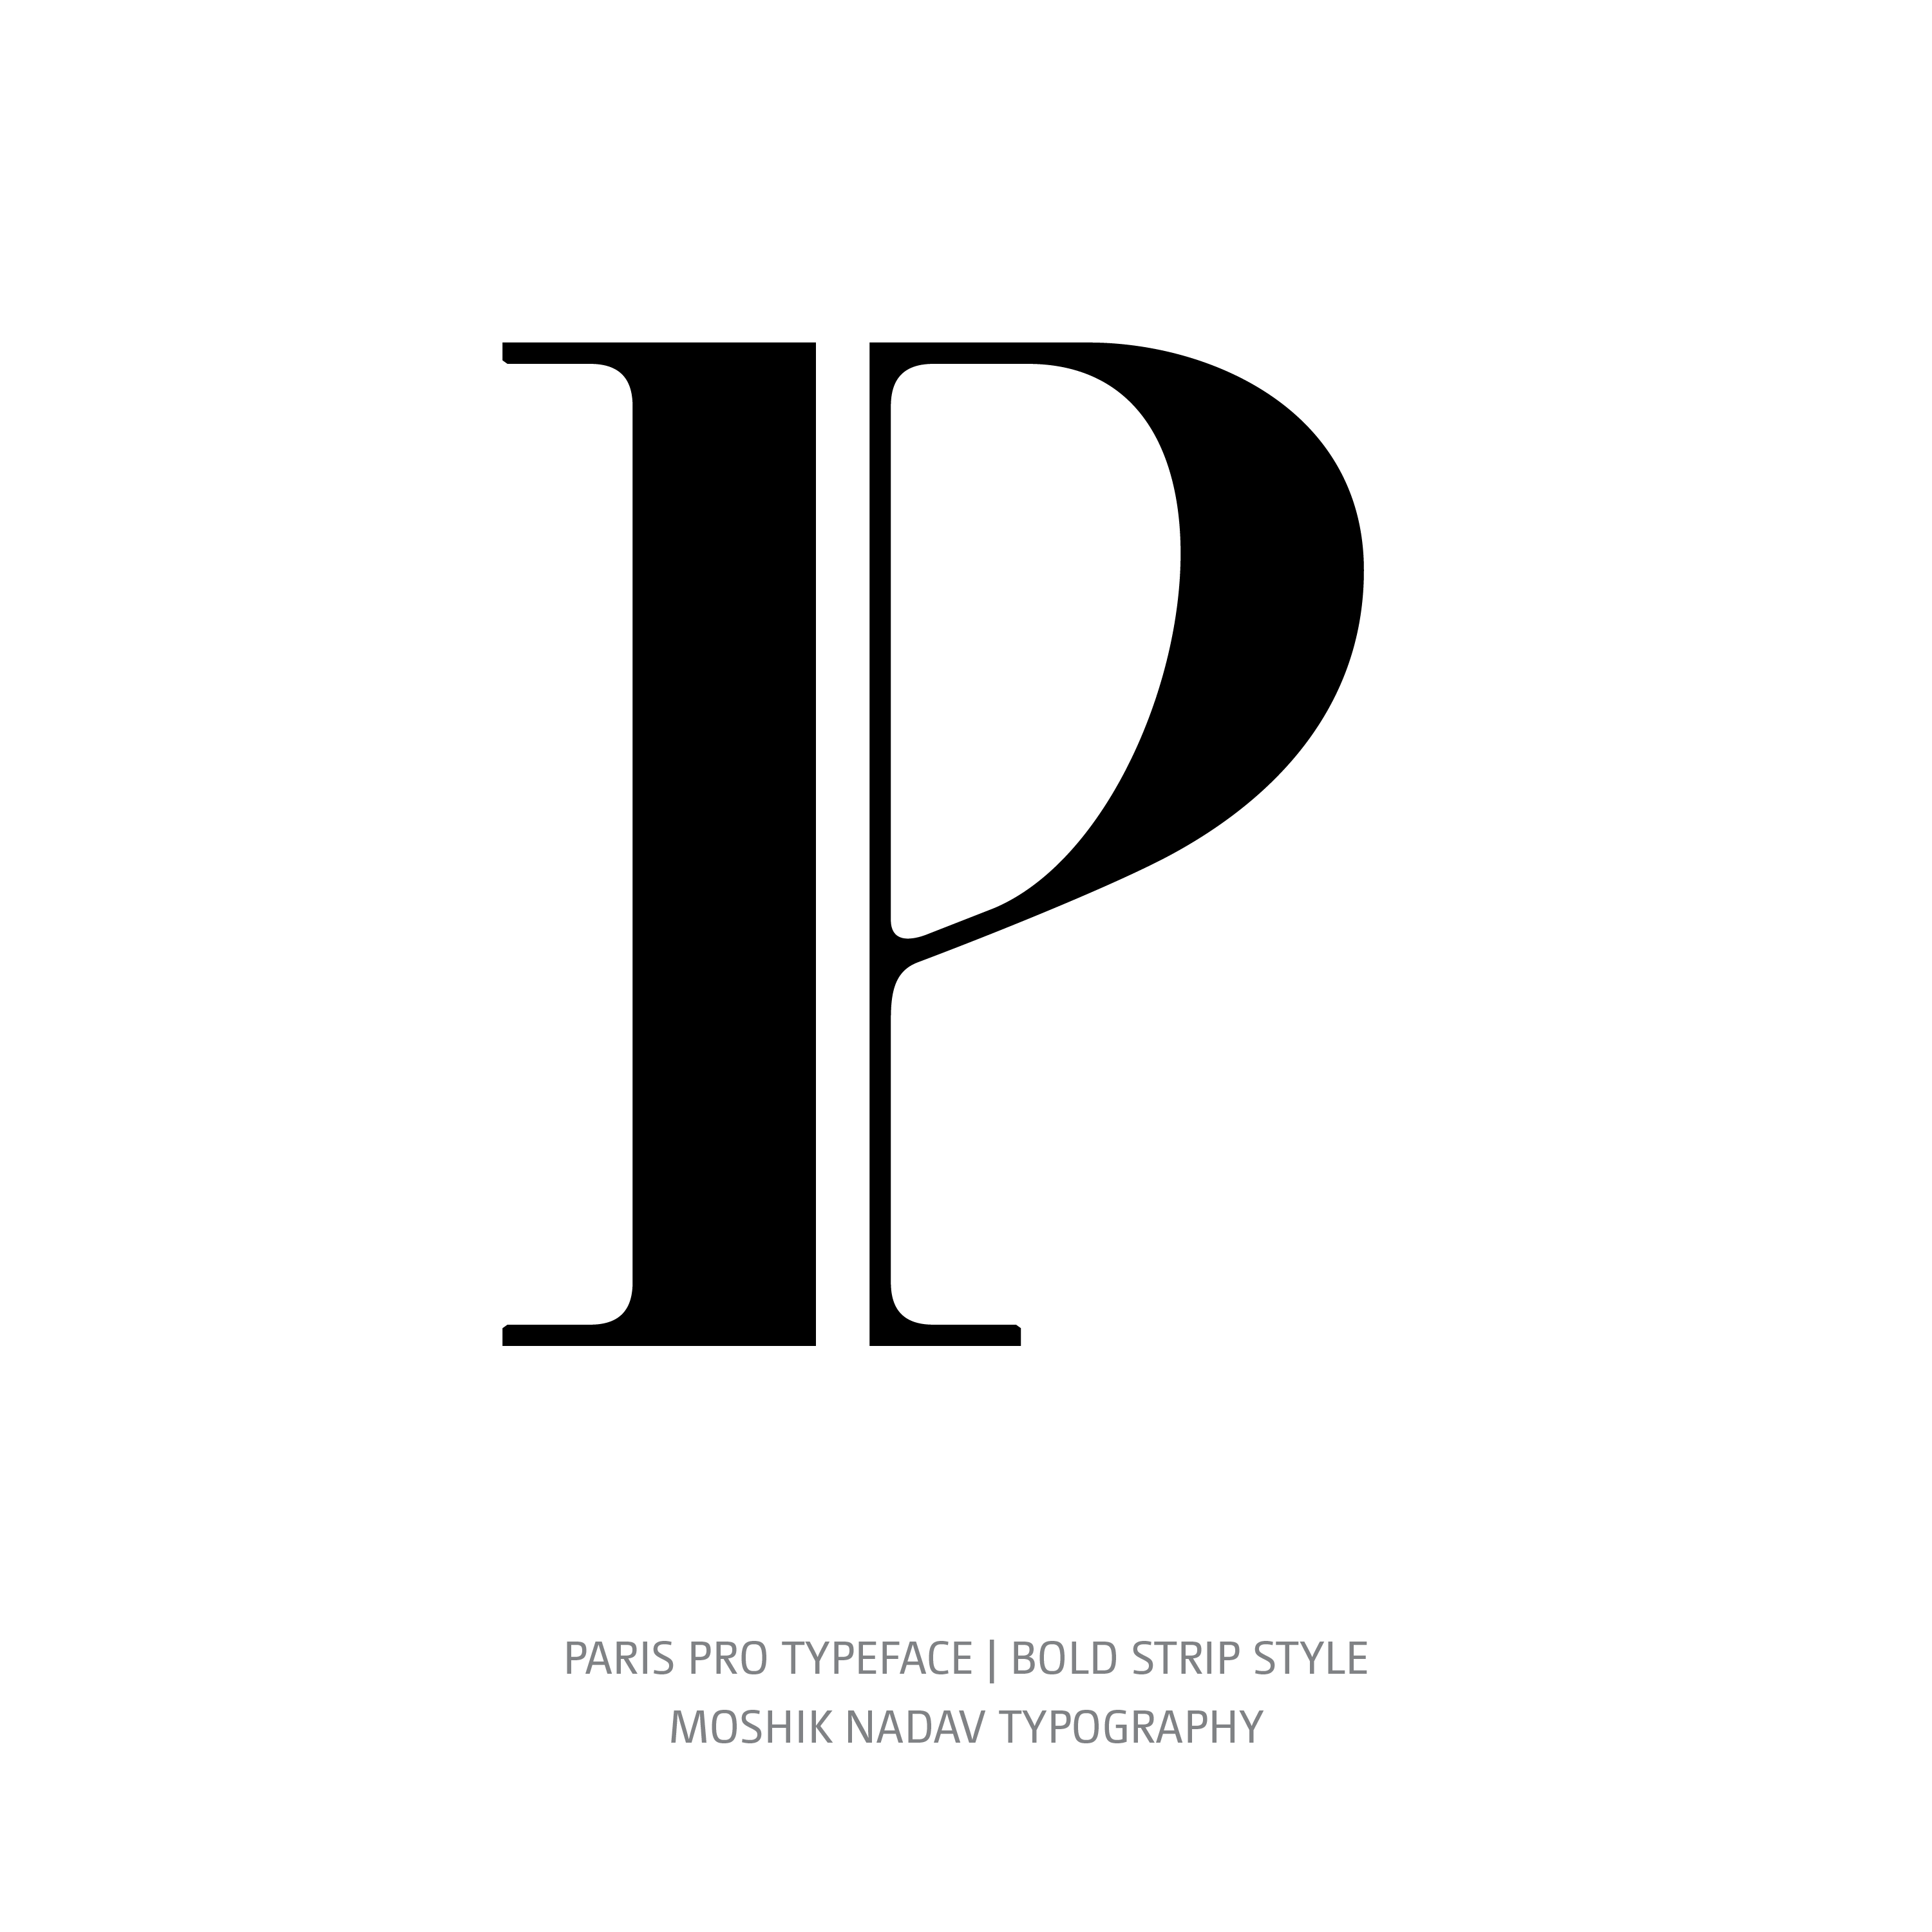 Paris Pro Typeface Bold Strip P